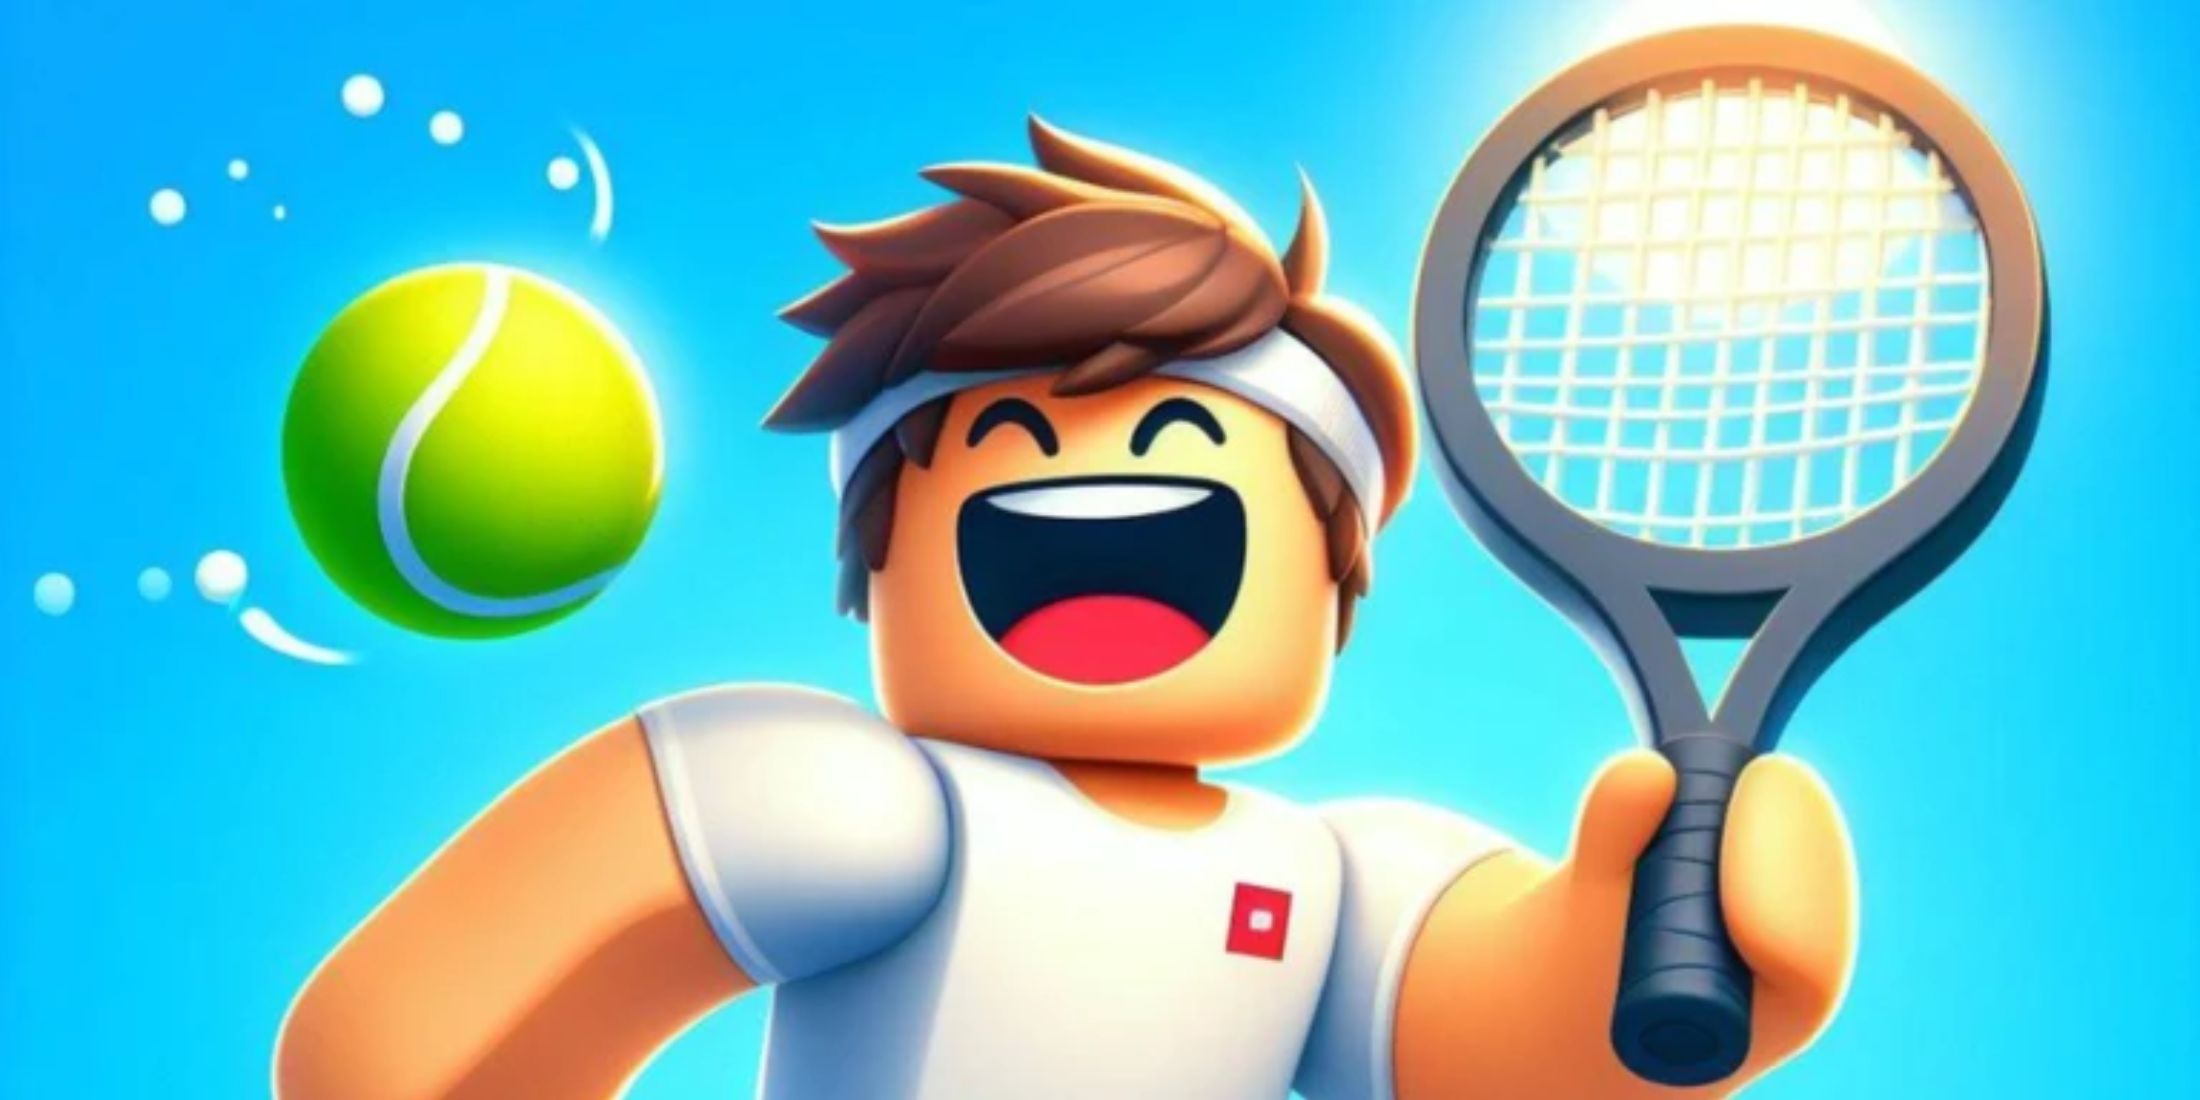 Tennis Simulator character